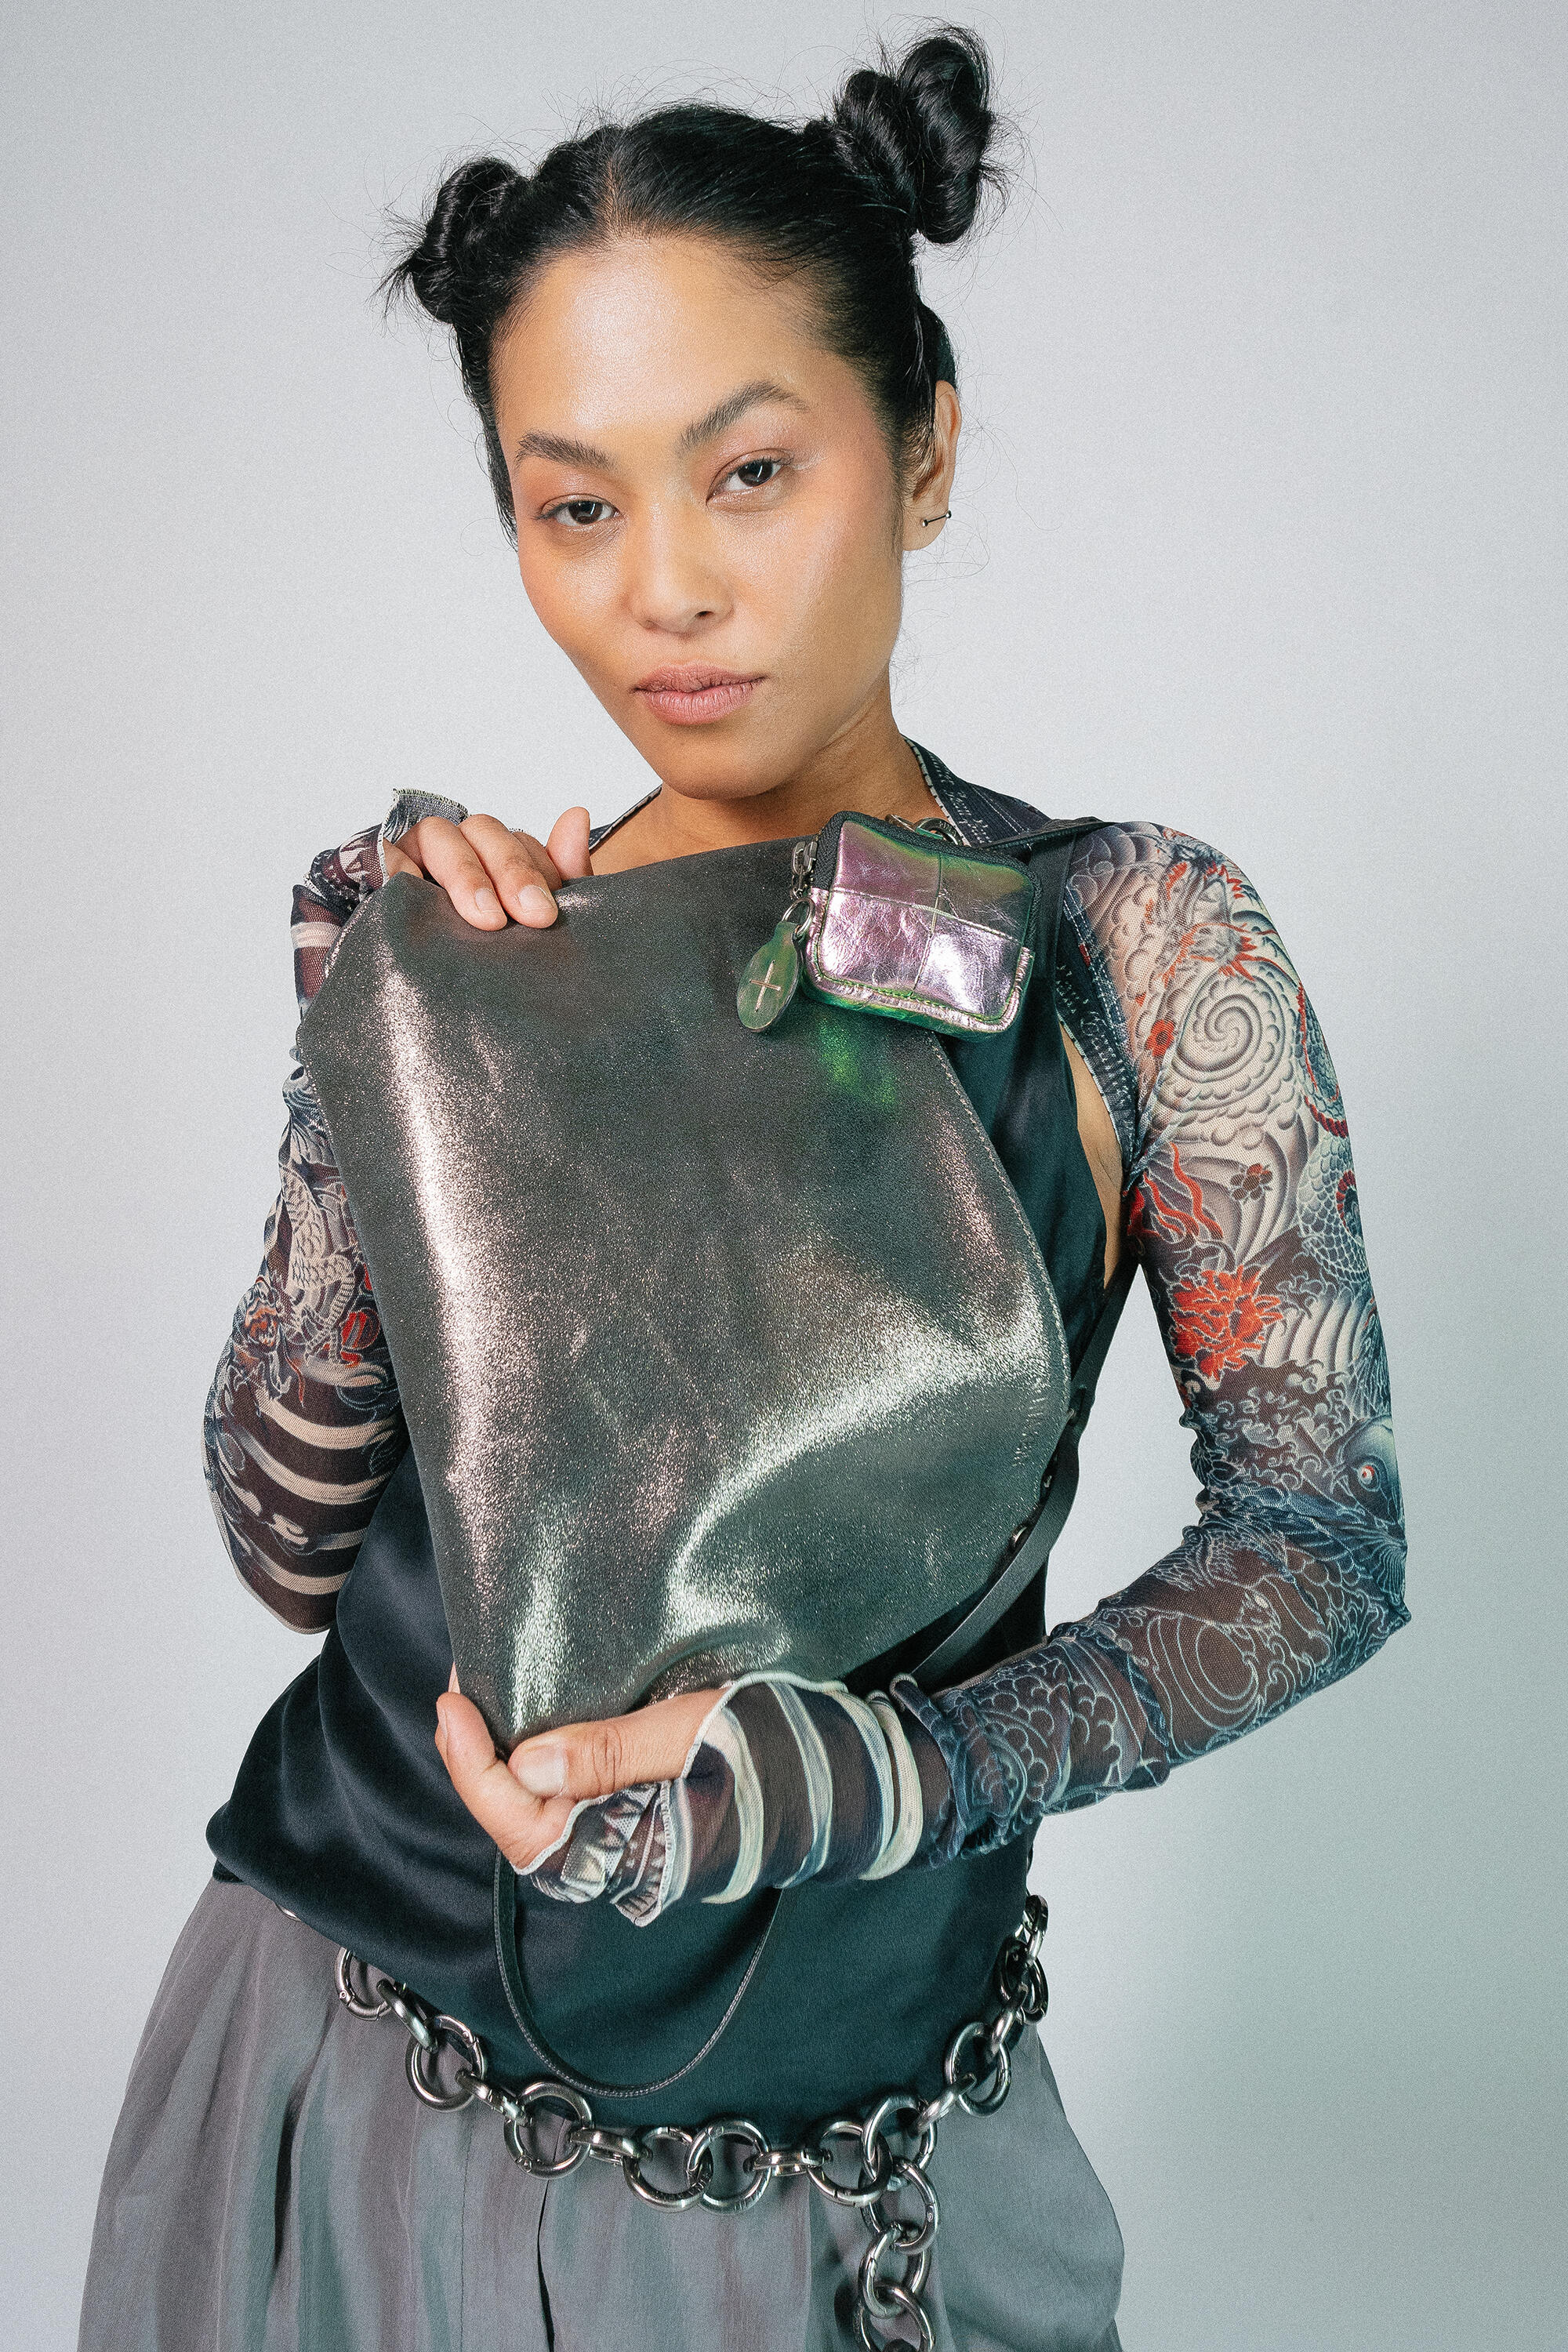 Eine Person mit frisiertem Haar hält eine große metallische INA KENT-Handtasche dicht vor der Brust. Sie trägt ein Oberteil mit Spitzenmuster und langen Ärmeln sowie einen Kettengürtel.